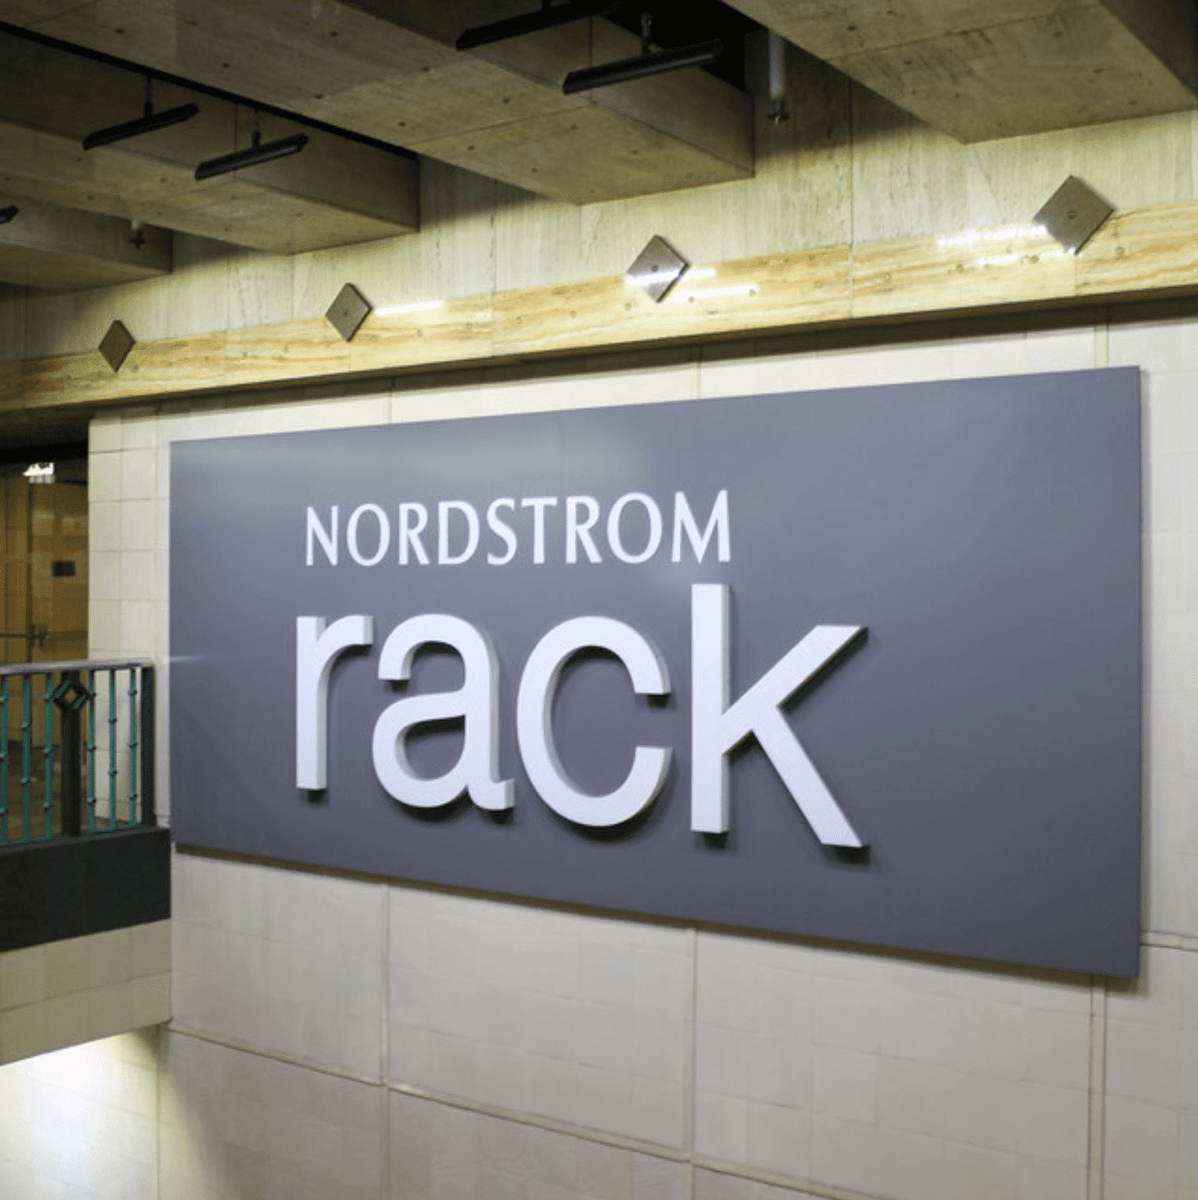 Nordstrom Rack Clearance Sale Scam - Don't Get Duped! - MalwareTips Blog